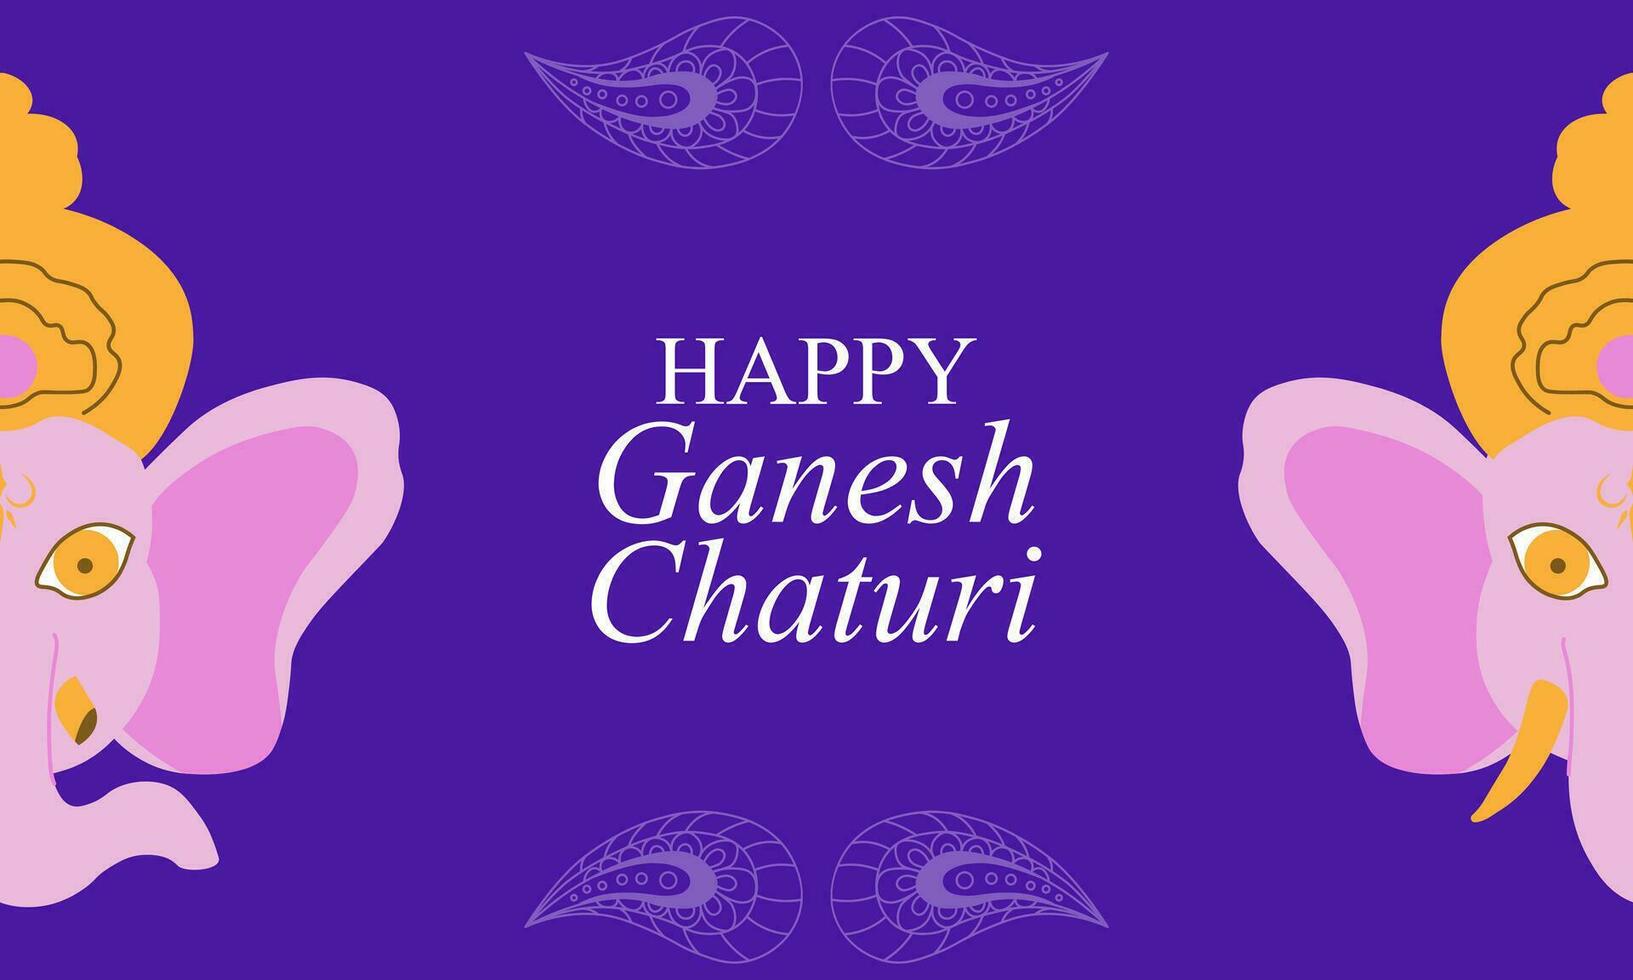 Lycklig ganesh chaturthi för hälsning kort, affisch, bakgrund för ganesh chaturthi festival av Indien vektor